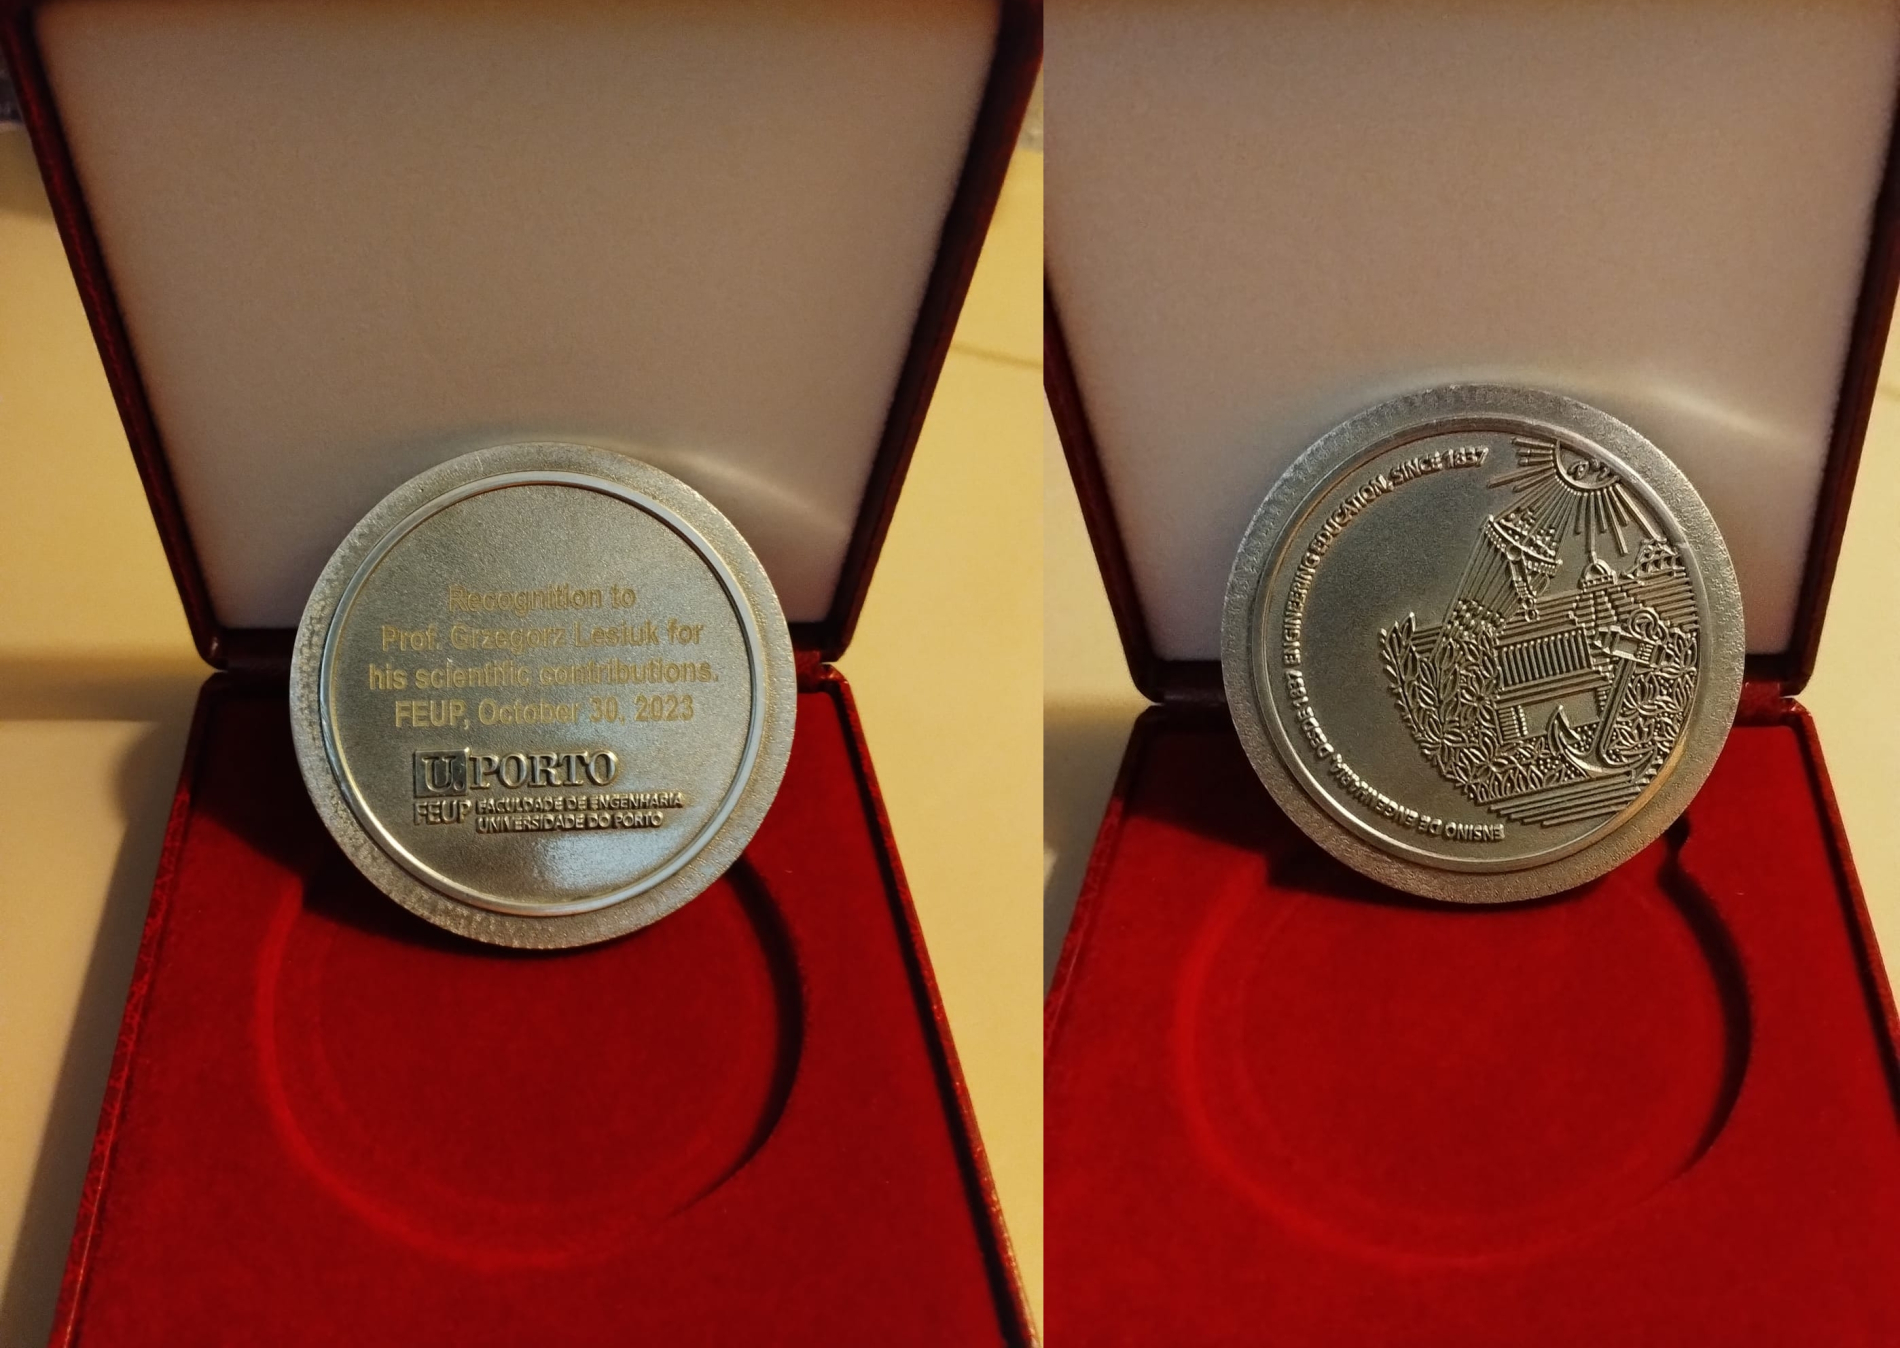 Zdjęcie medalu, który otrzymał prof. Grzegorz Lesiuk